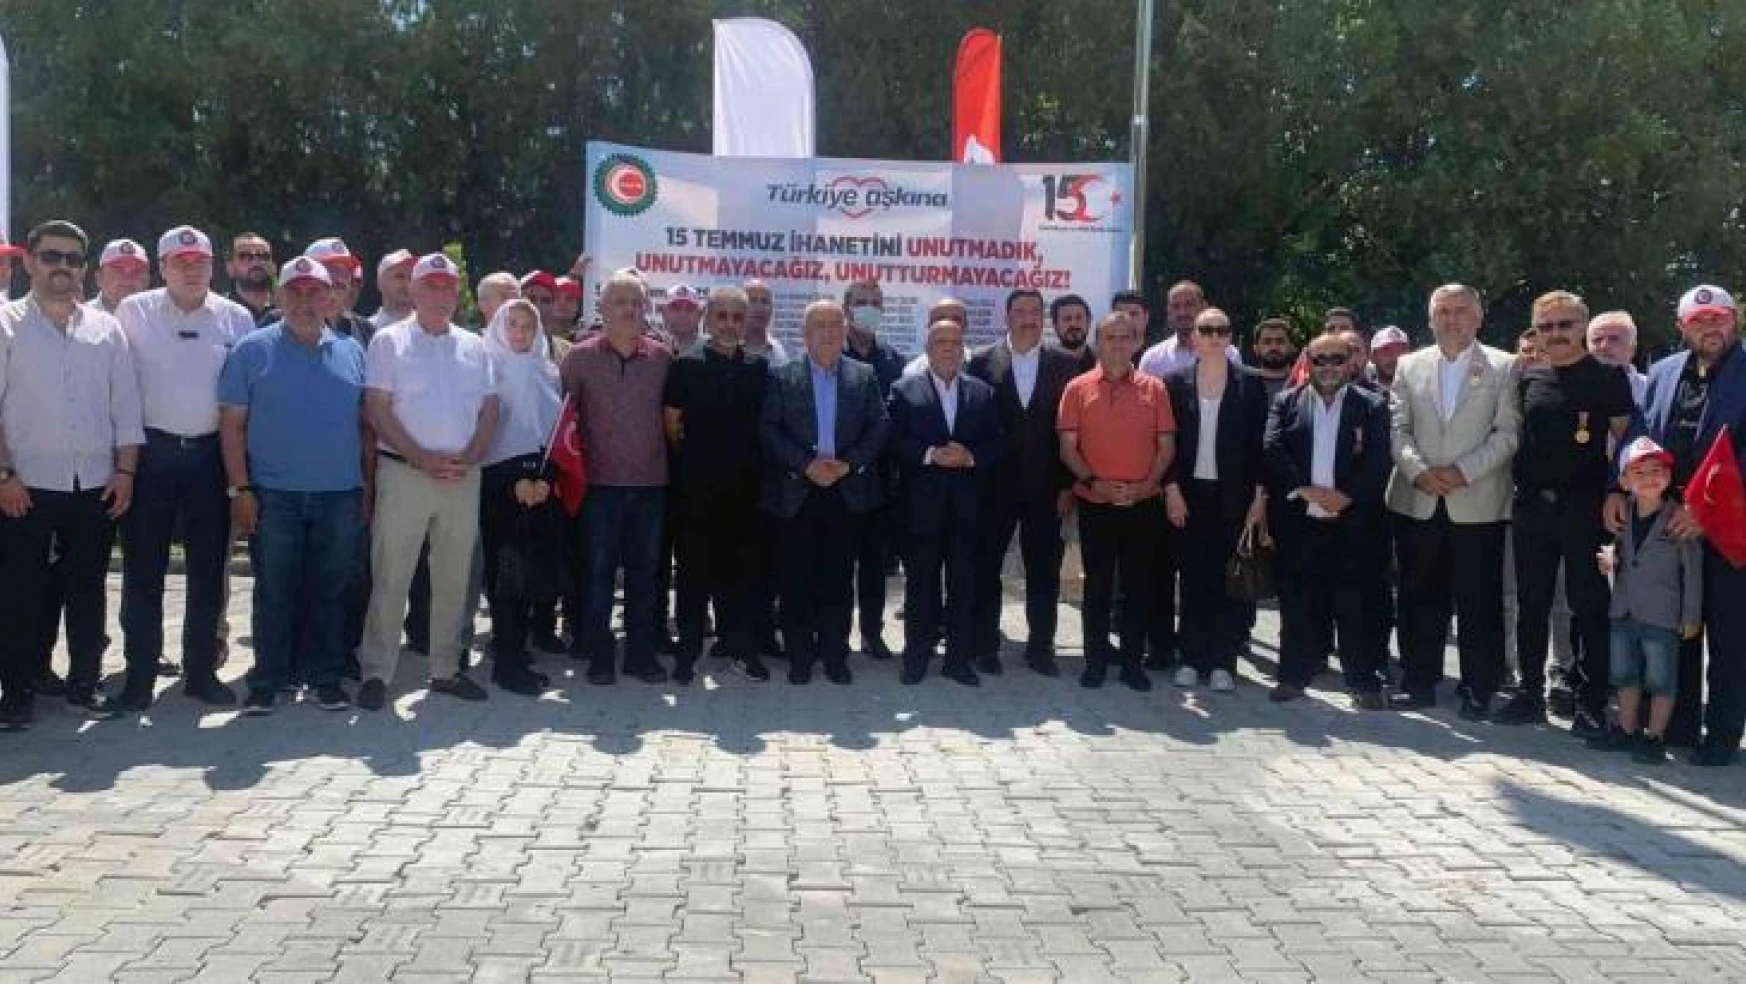 HAK-İŞ Başkanı Arslan: '15 Temmuz, Türkiye'nin çok önemli bir kilometre taşıdır'